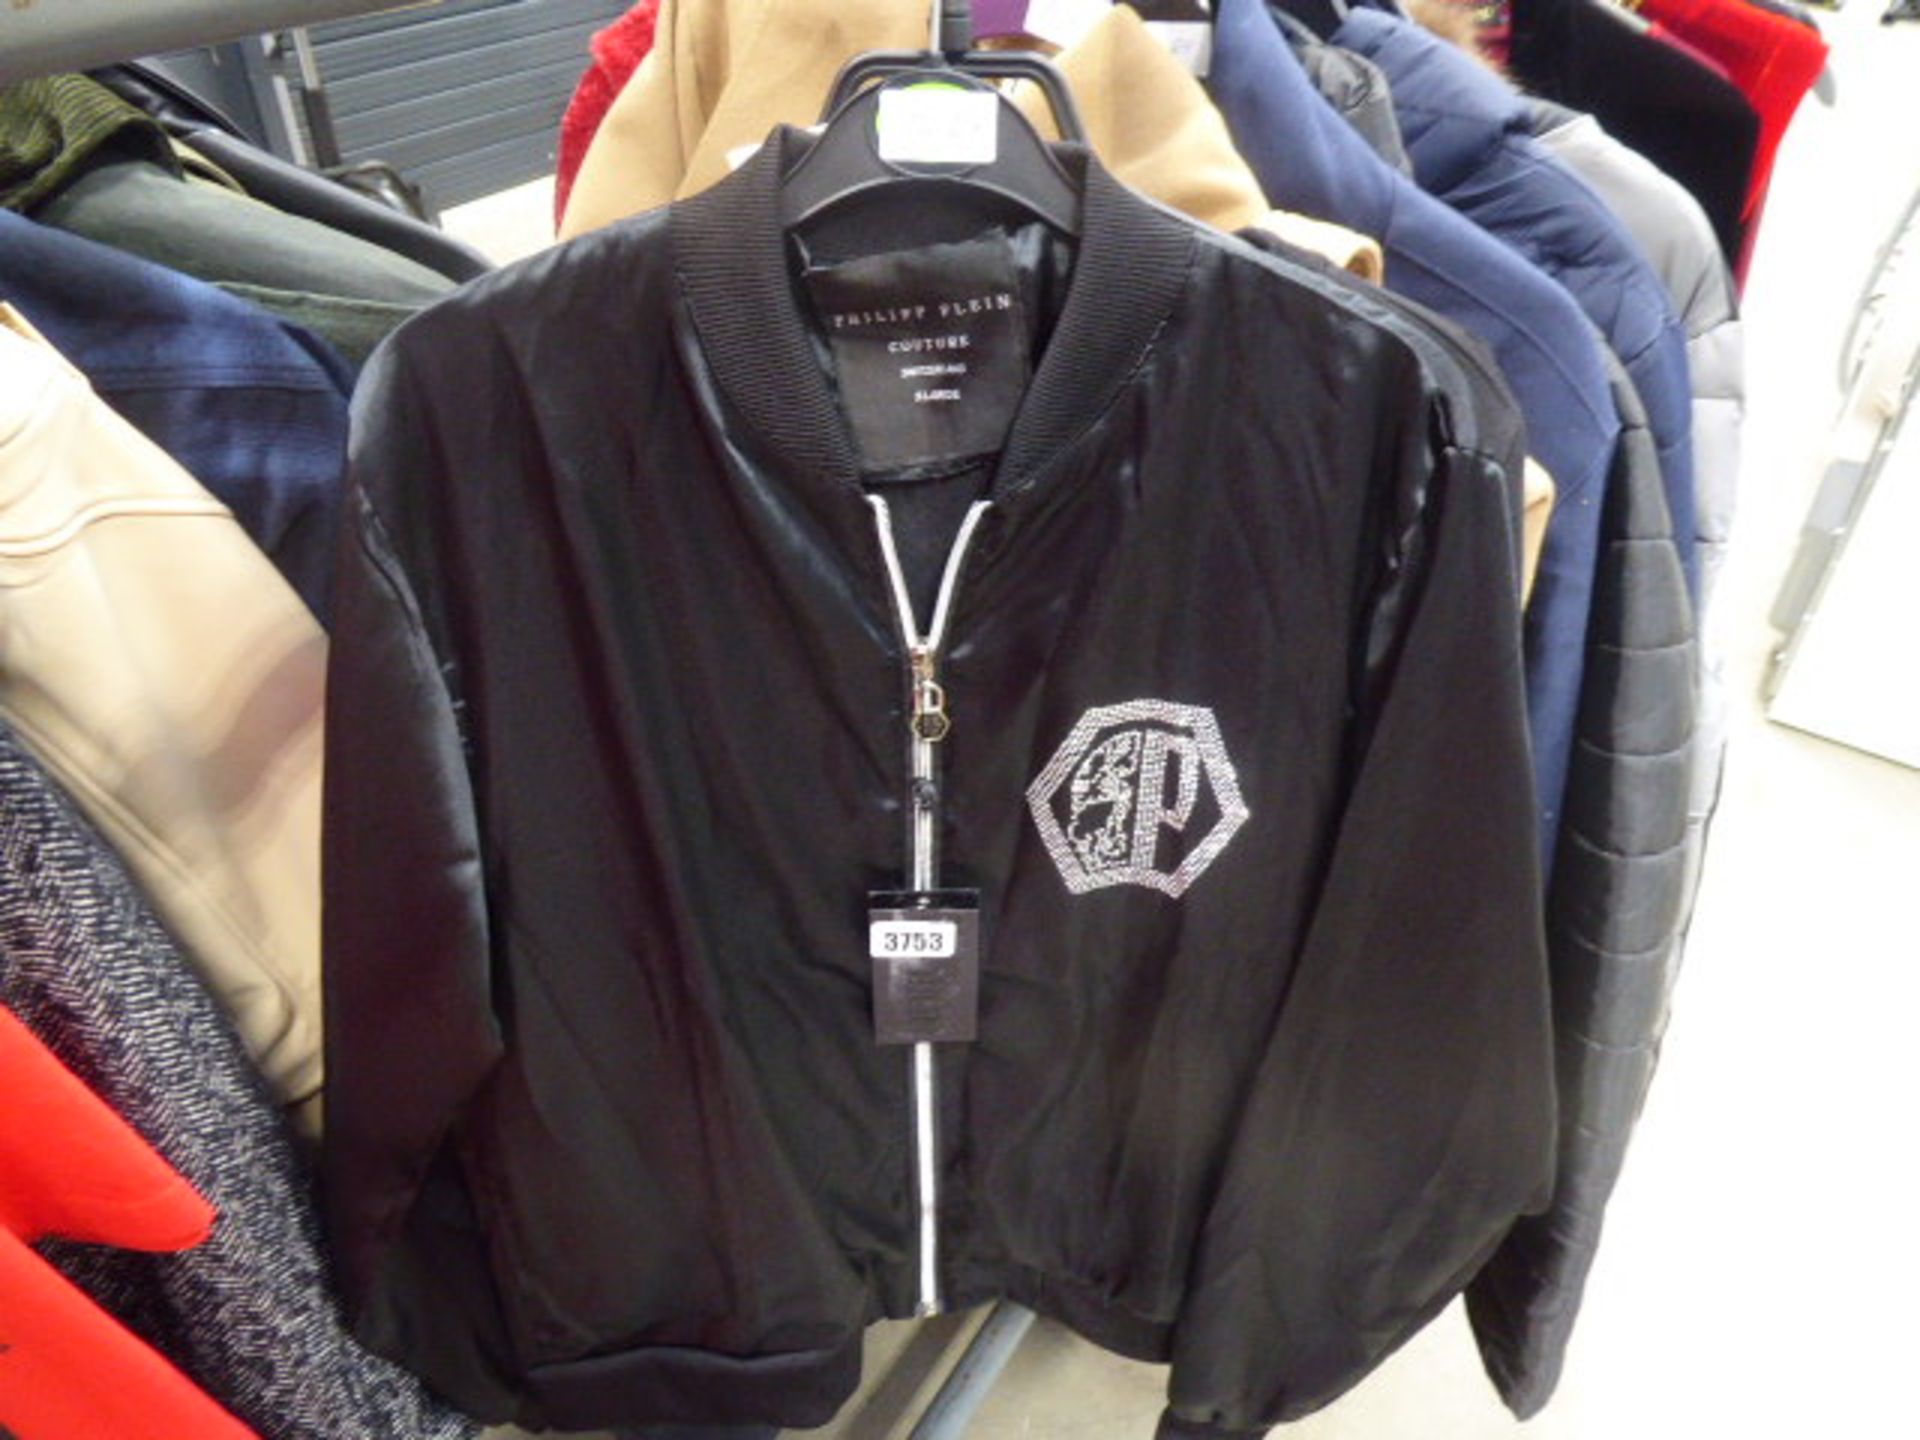 Philip Plain jacket size XL plus a Givenchy Paris jumper size S